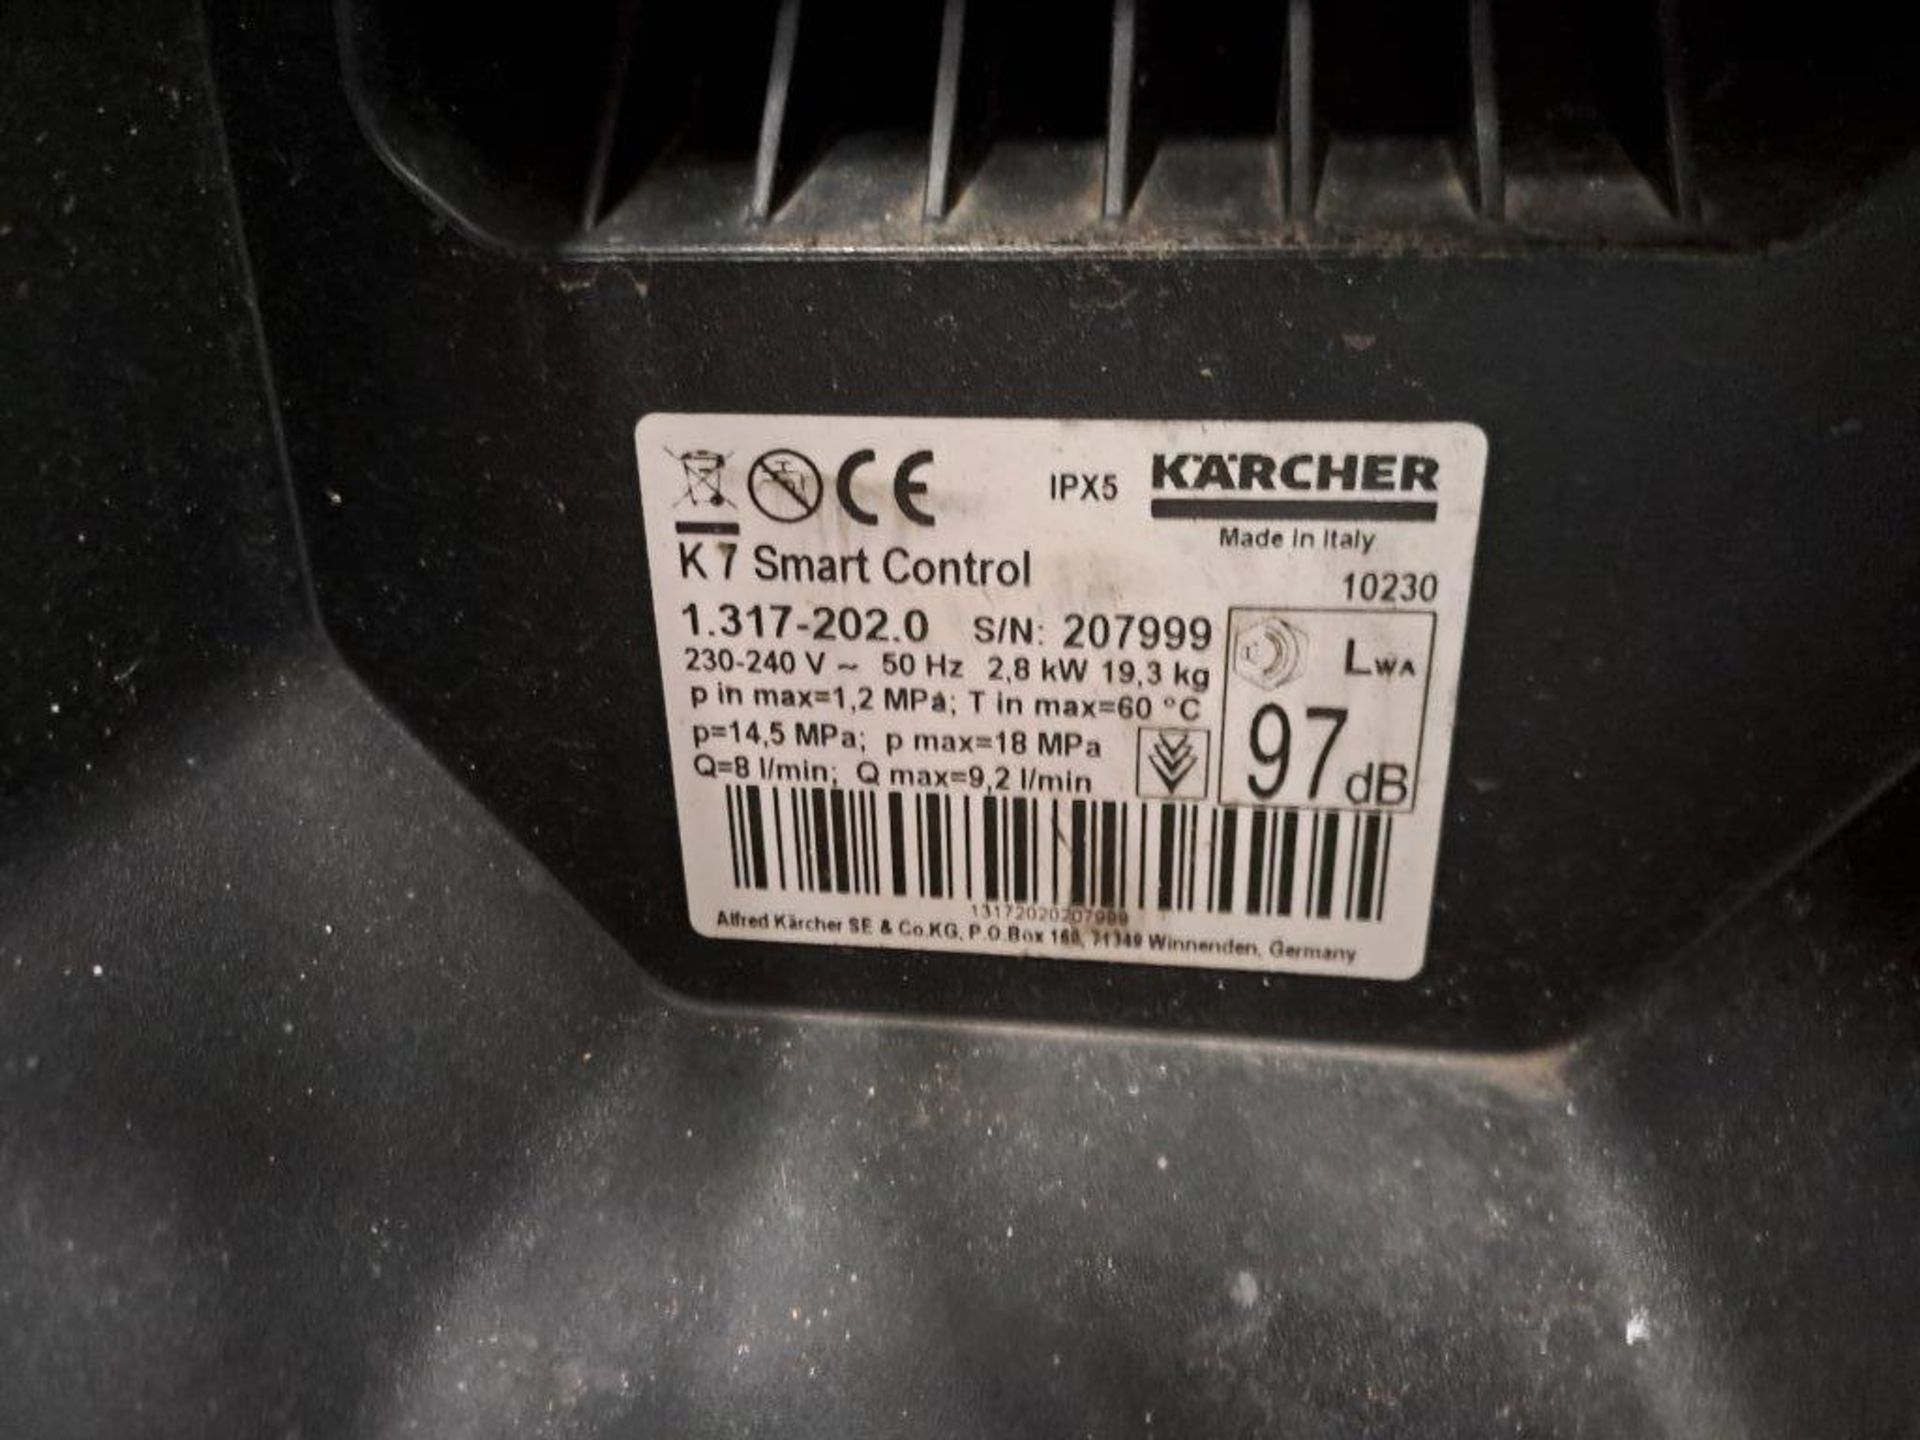 Karcher K7 Smart Control Pressure washer - Image 2 of 4